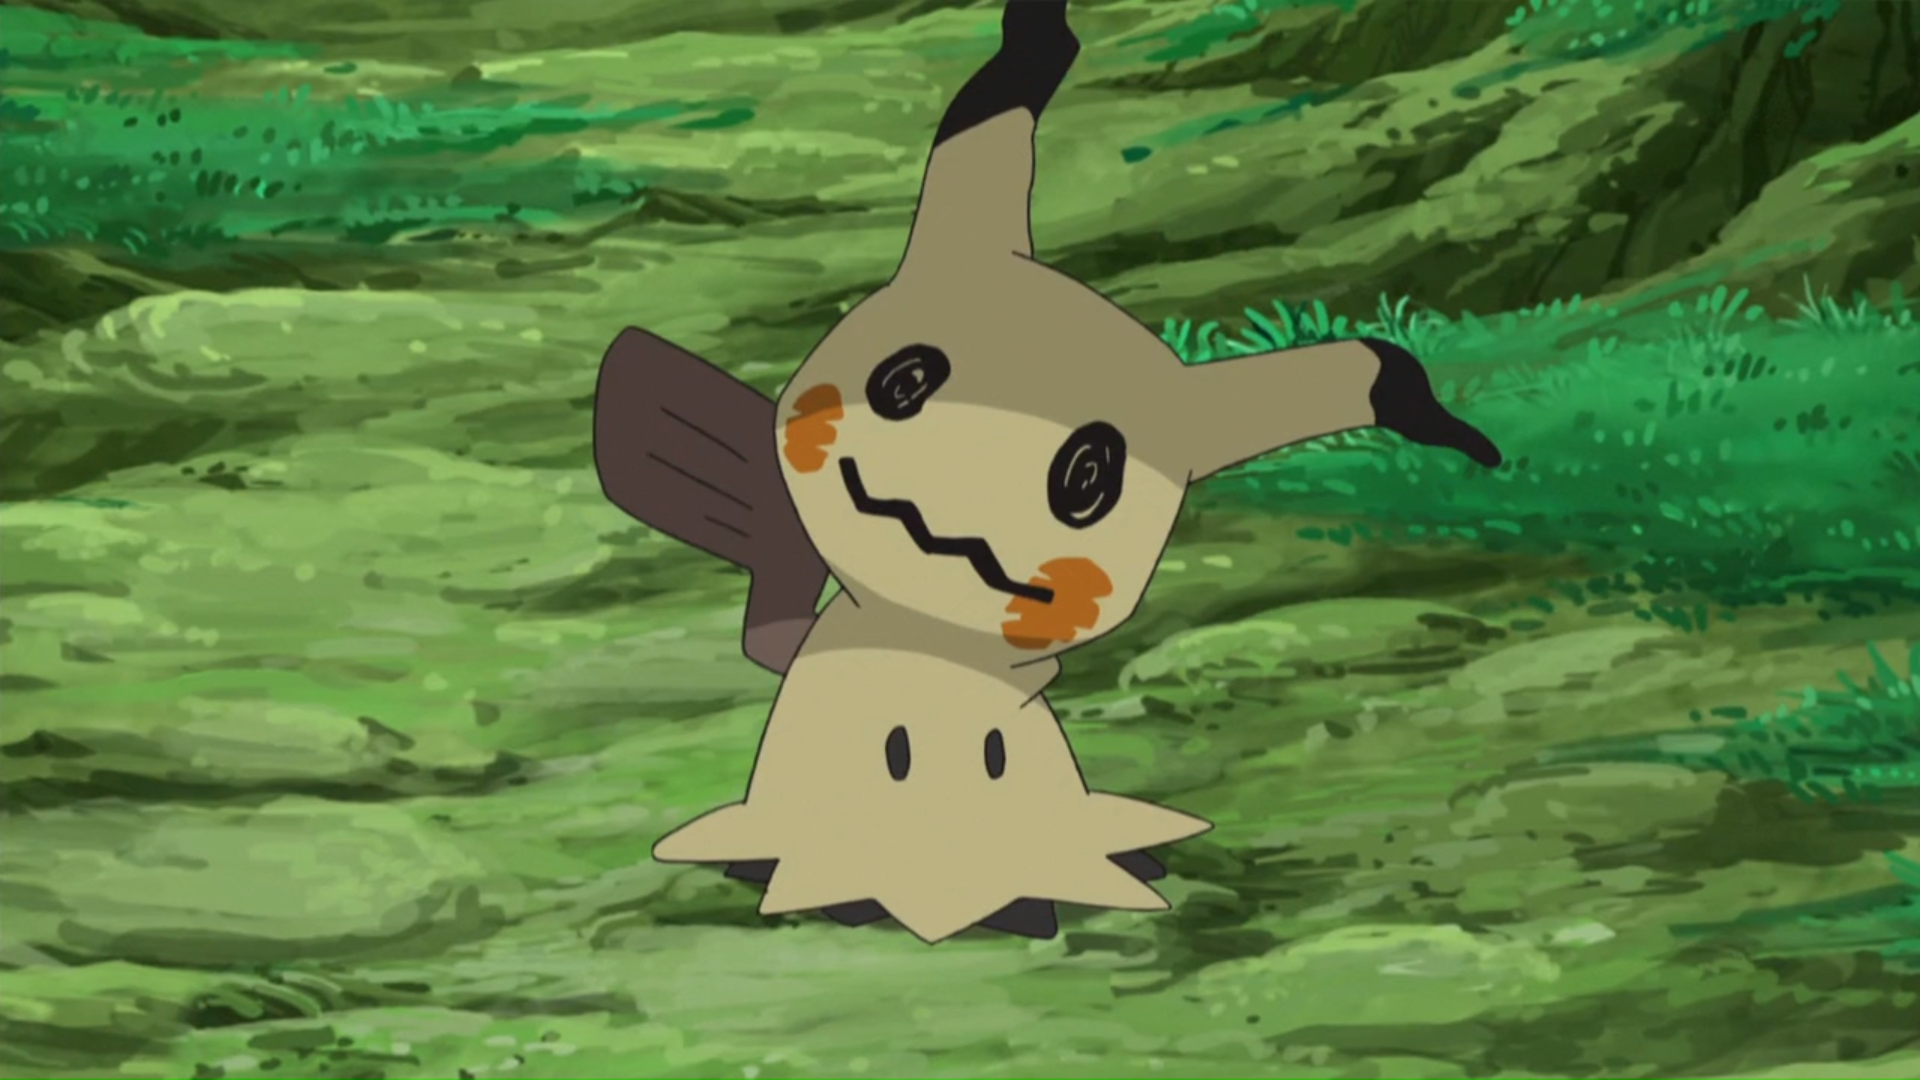 Categoria:Pokémon do tipo Fantasma, PokéPédia